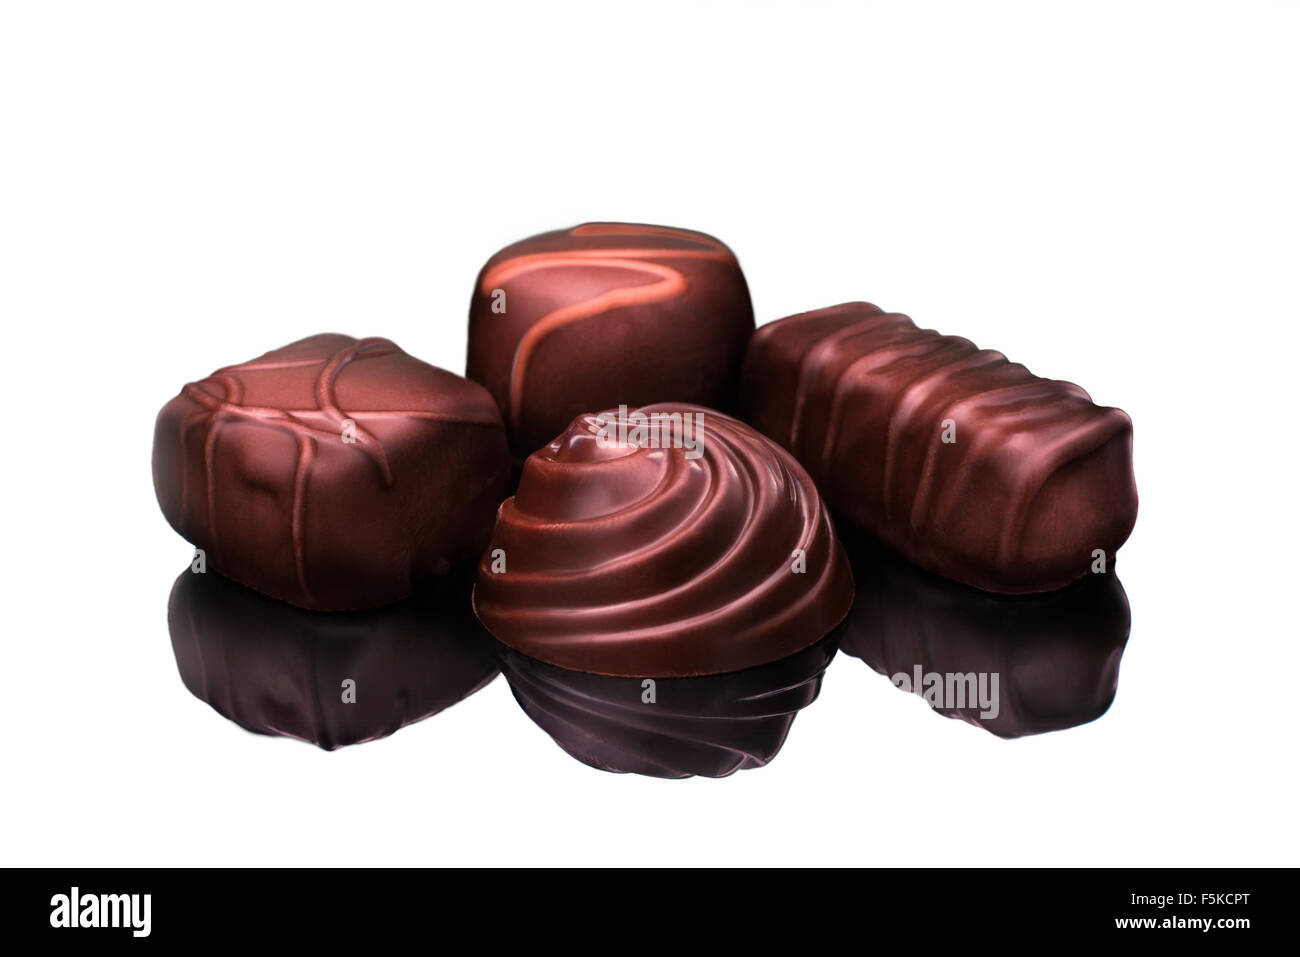 Chocolats sont vus close up sur fond blanc en studio, 2015. (Adrien Veczan) Banque D'Images